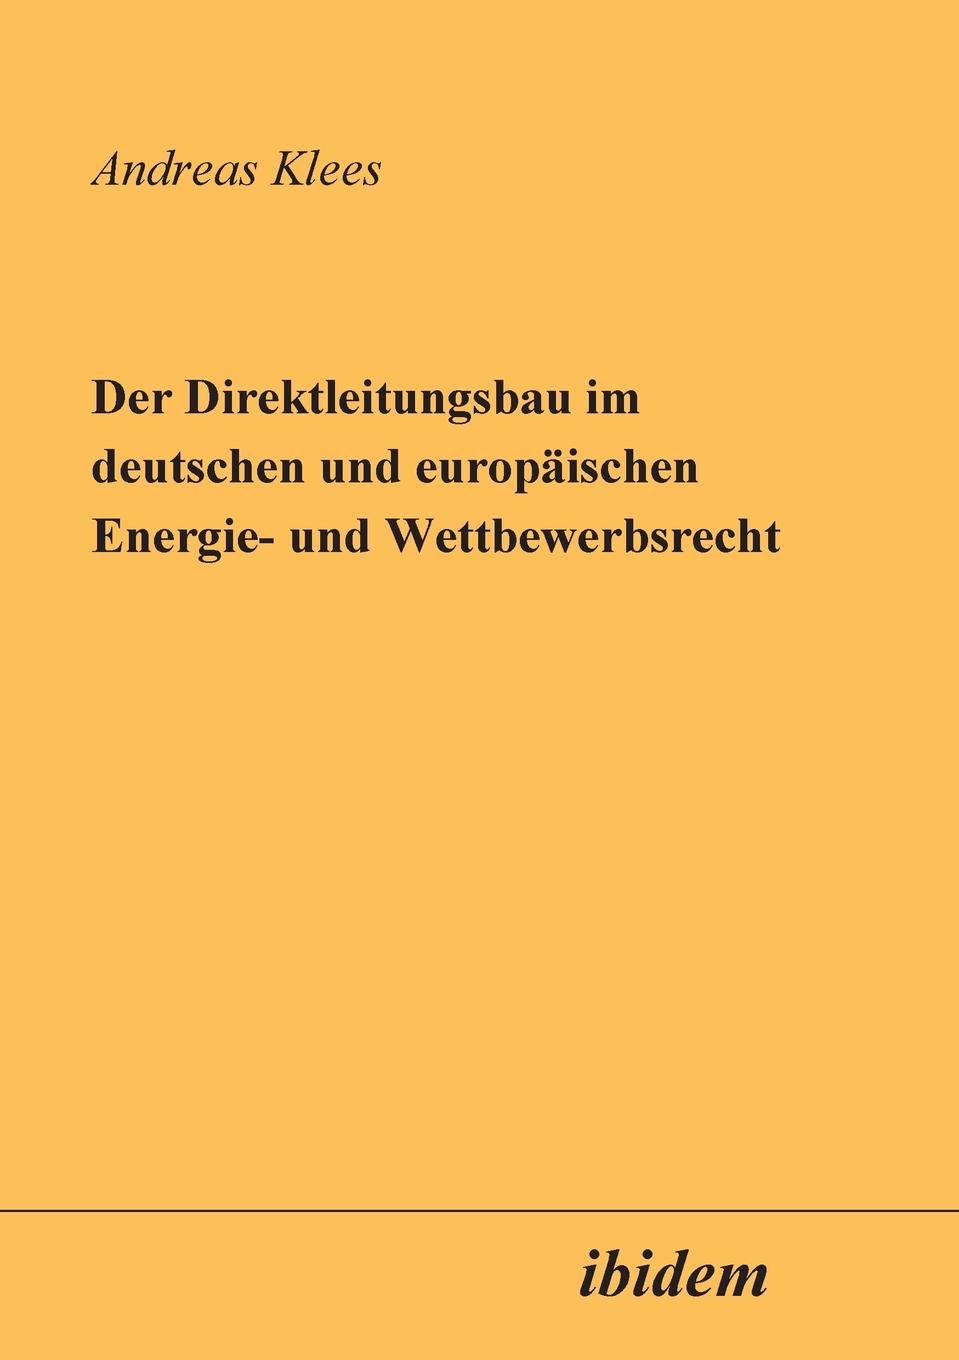 Der Direktleitungsbau im deutschen und europaischen Energie- und Wettbewerbsrecht.